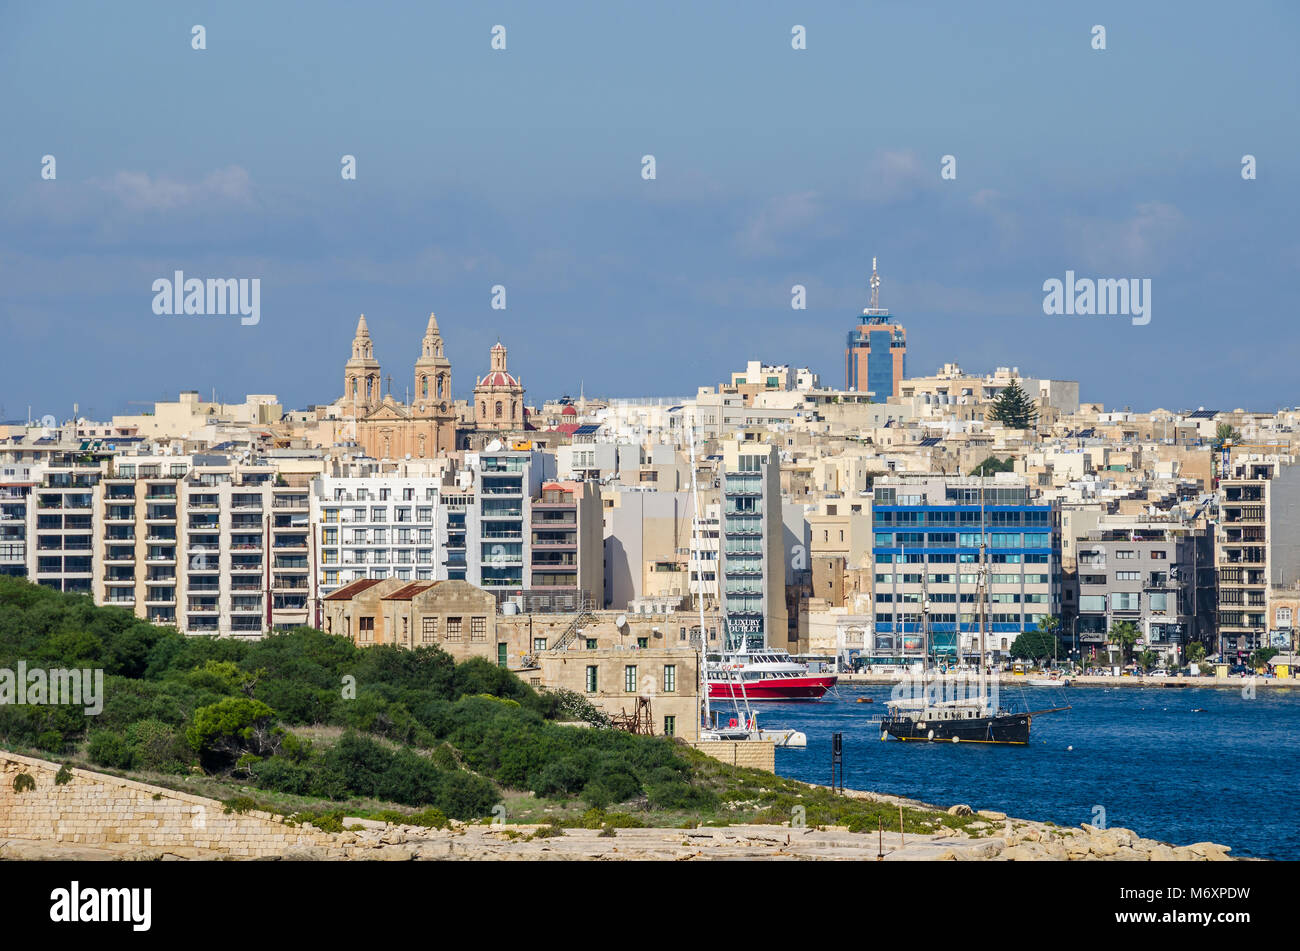 Gzira, Malta - 8. November 2015: Blick von Gzira, einer Stadt im Marsamxett Harbour von Valletta entfernt, wie gesehen. Alte Kathedrale von dicht Bui umgeben Stockfoto